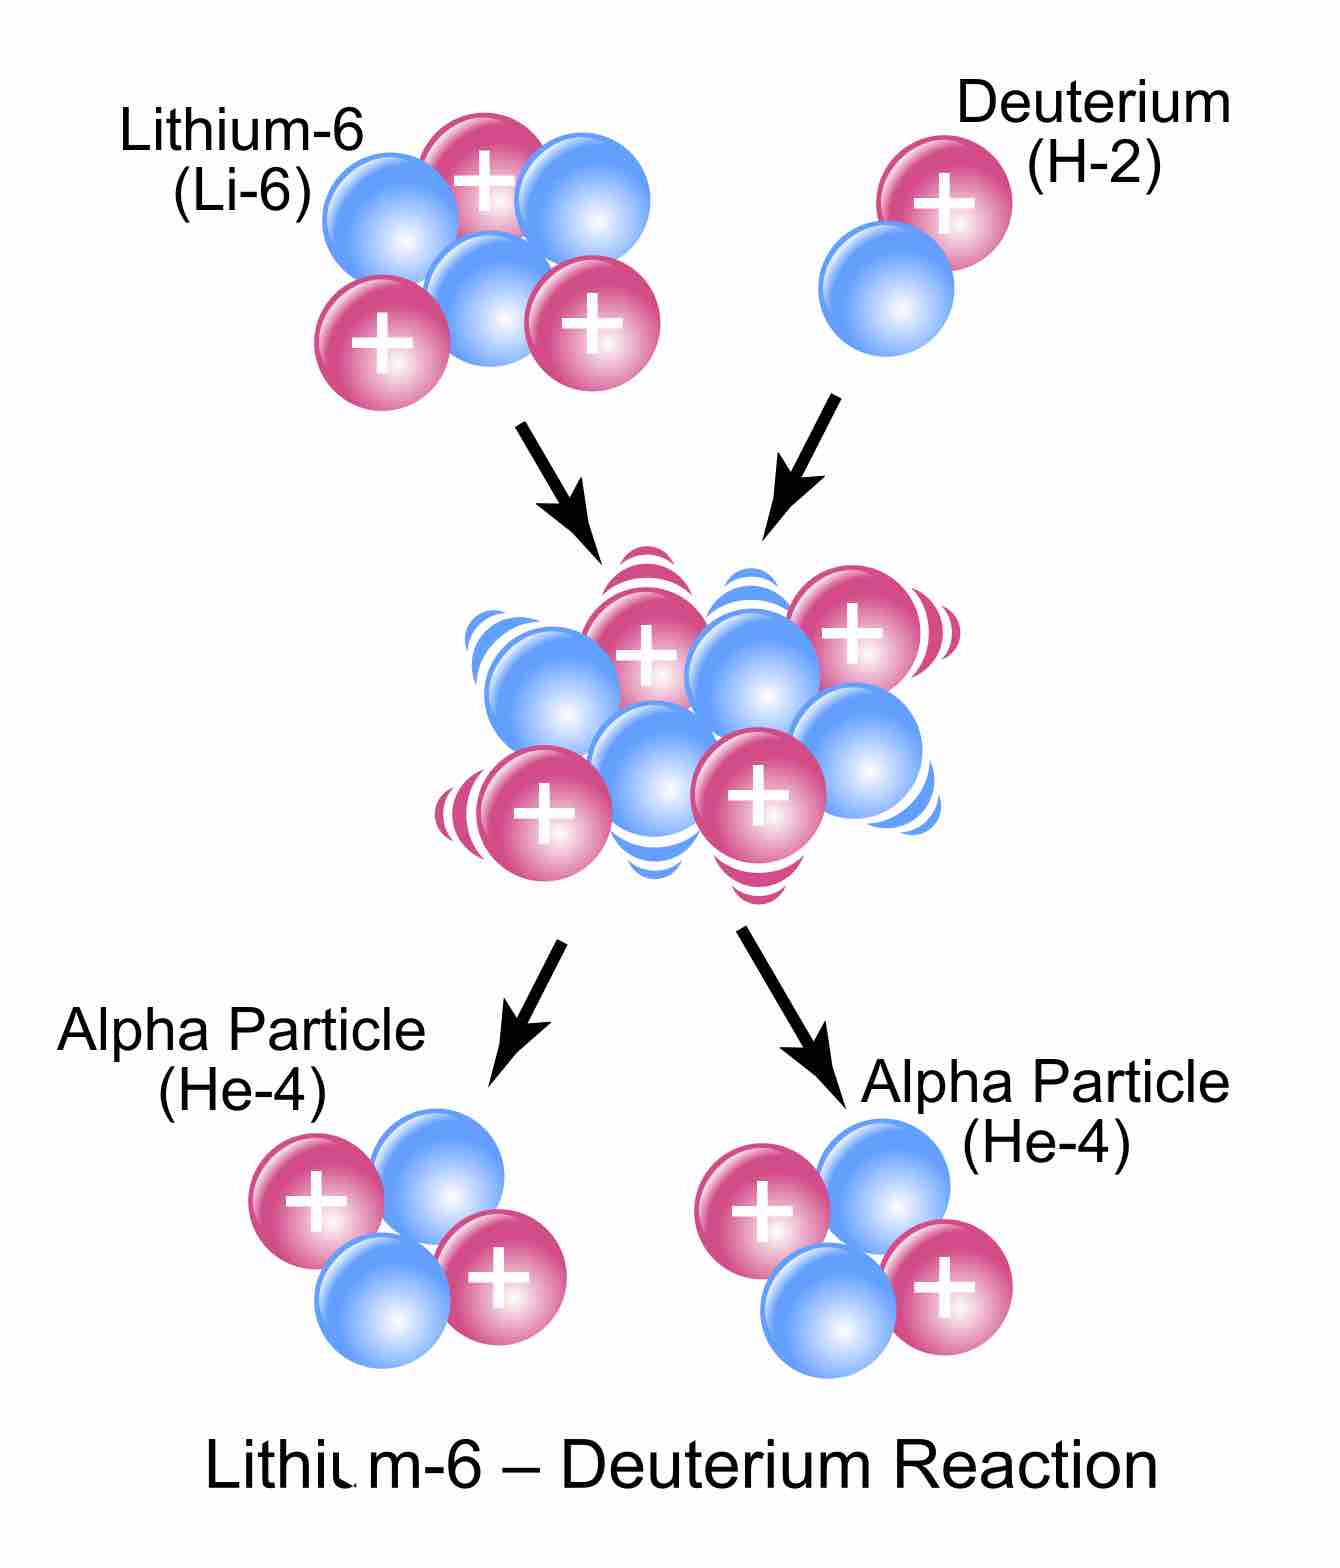 Lithium-6 plus deuterium gives two helium-4s.